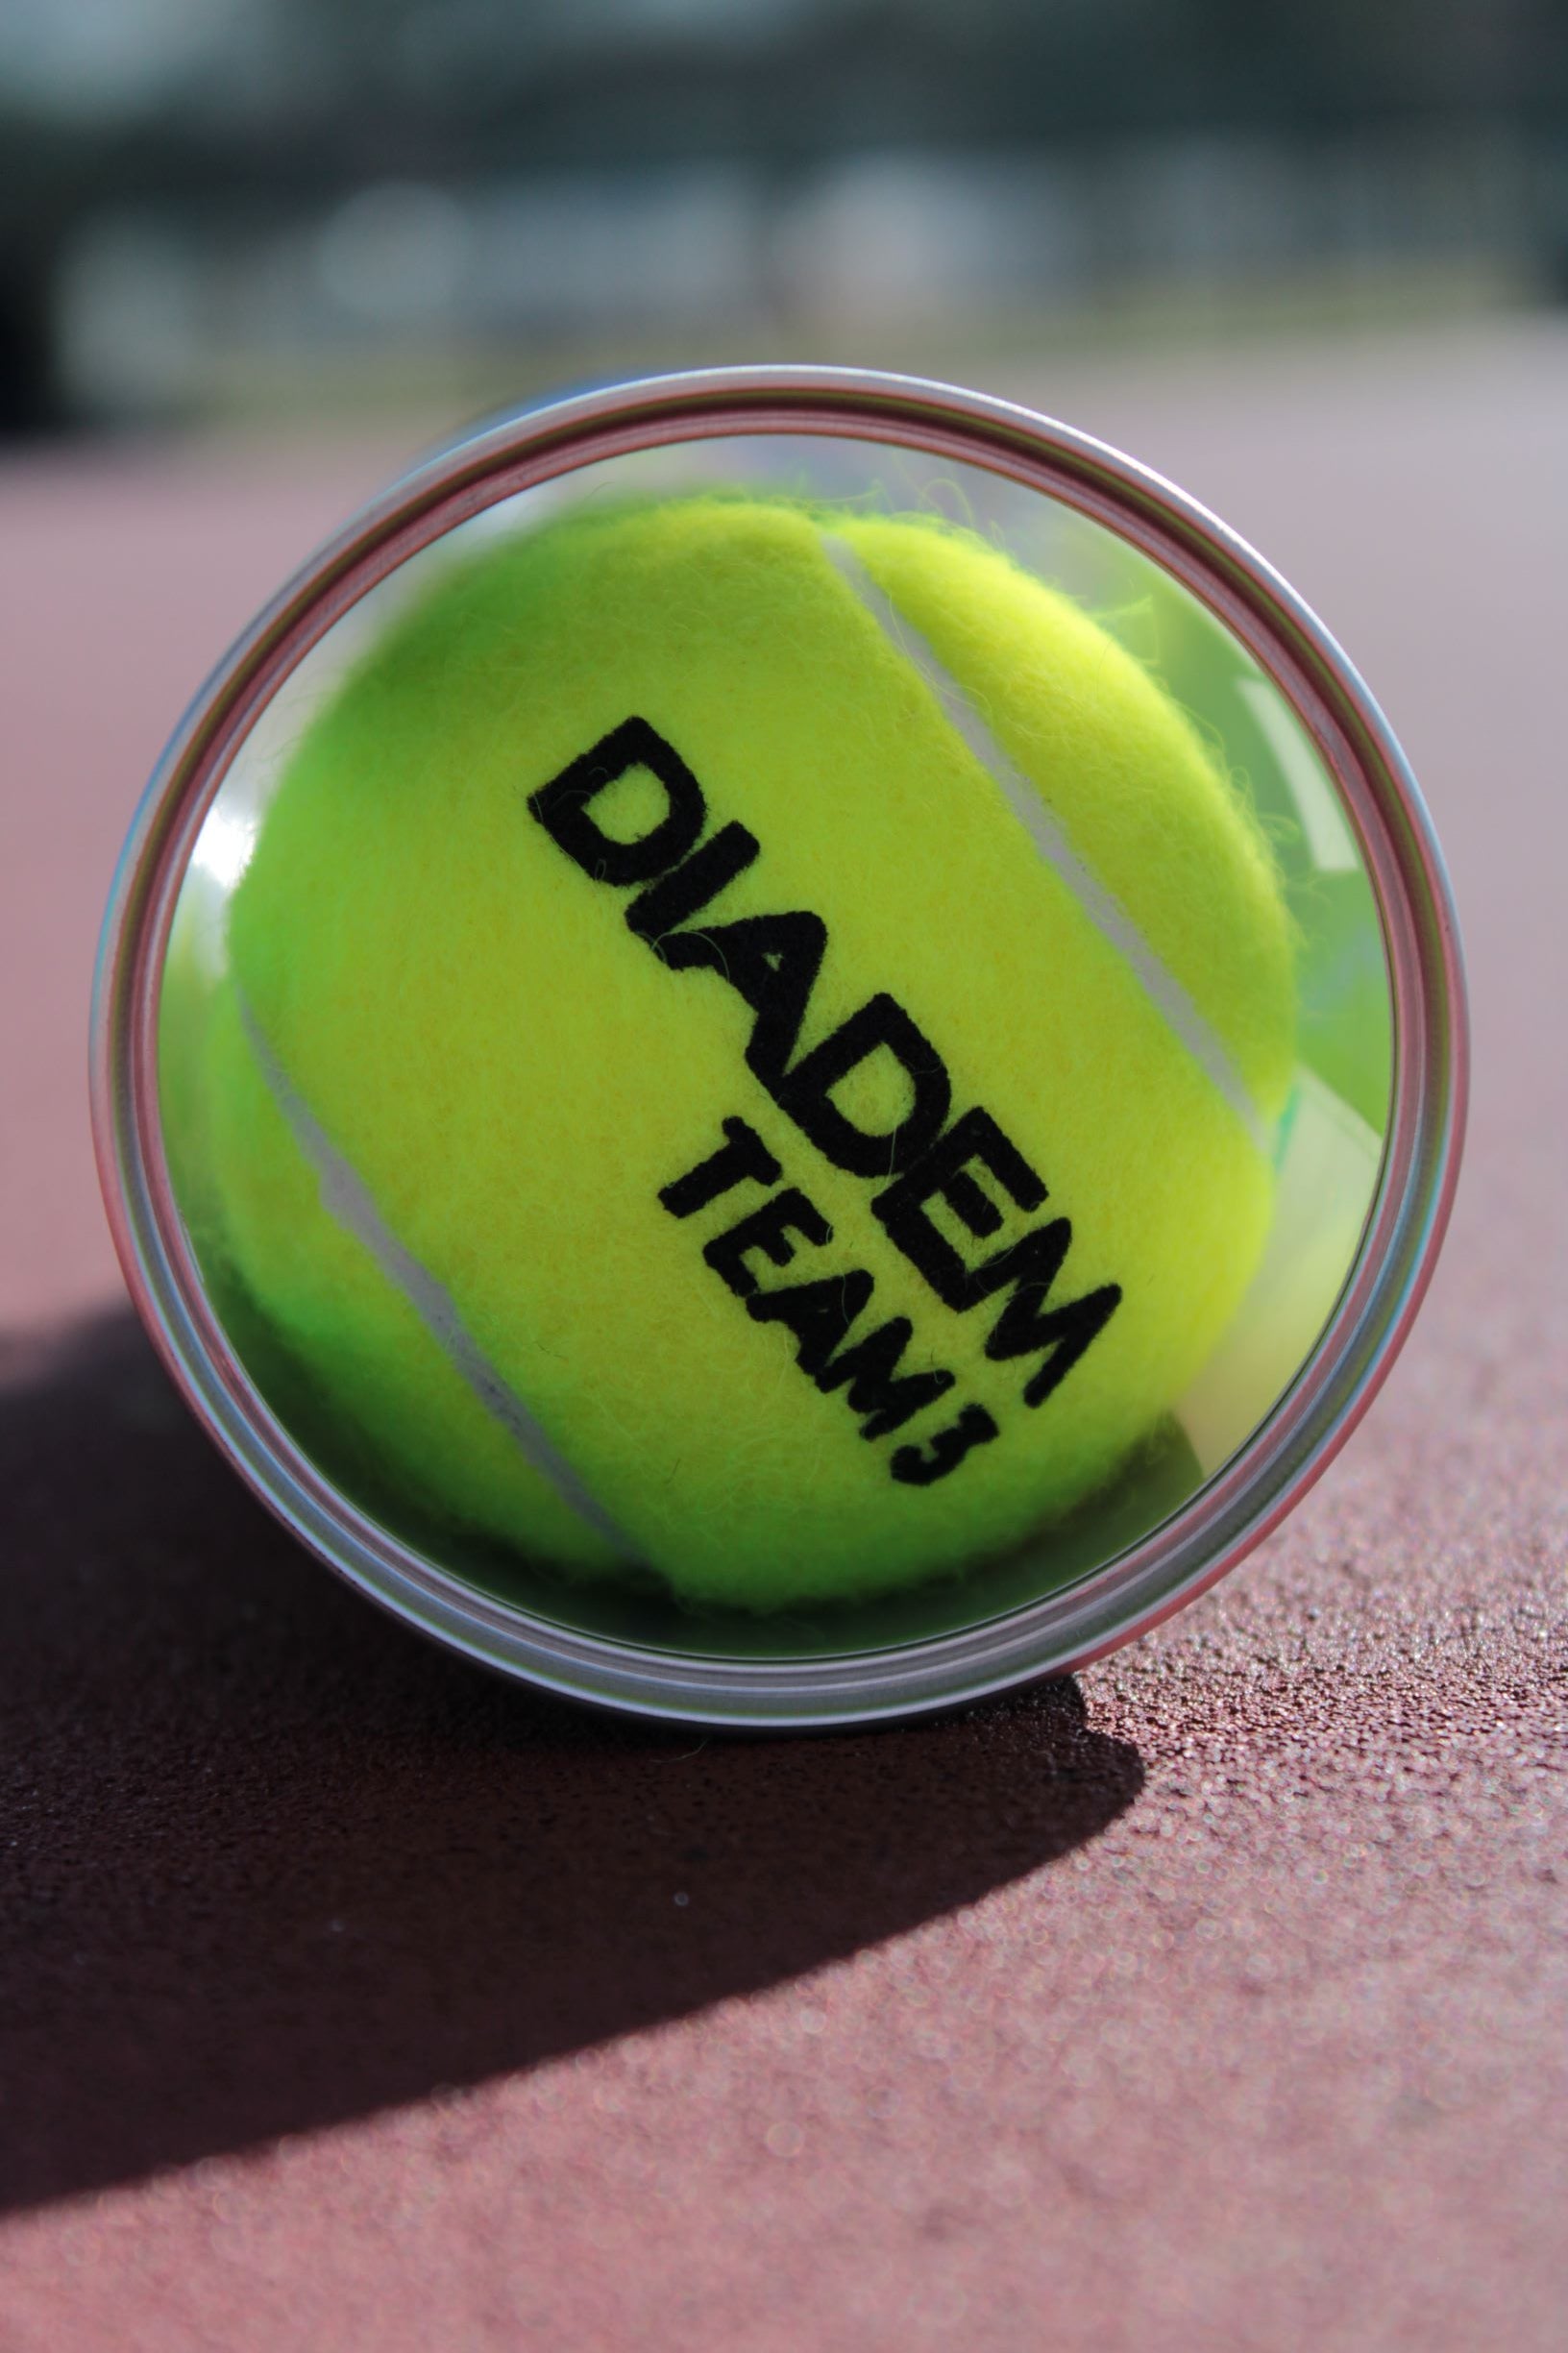 Diadem Premier Team Ball - Case